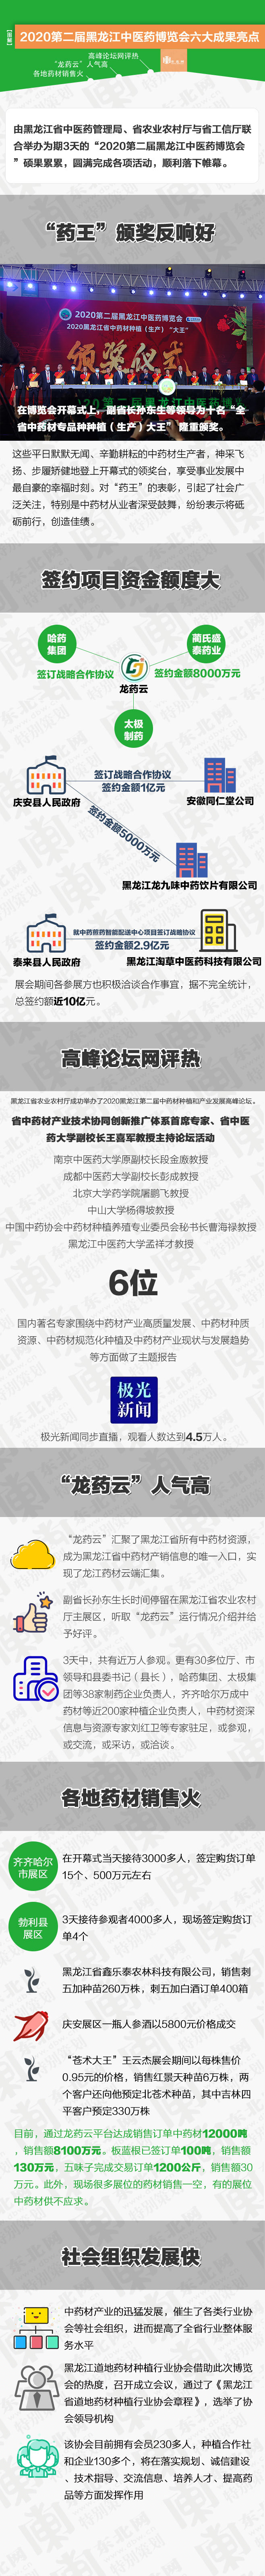 【一图看懂】2020第二届黑龙江中医药博览会六大成果亮点